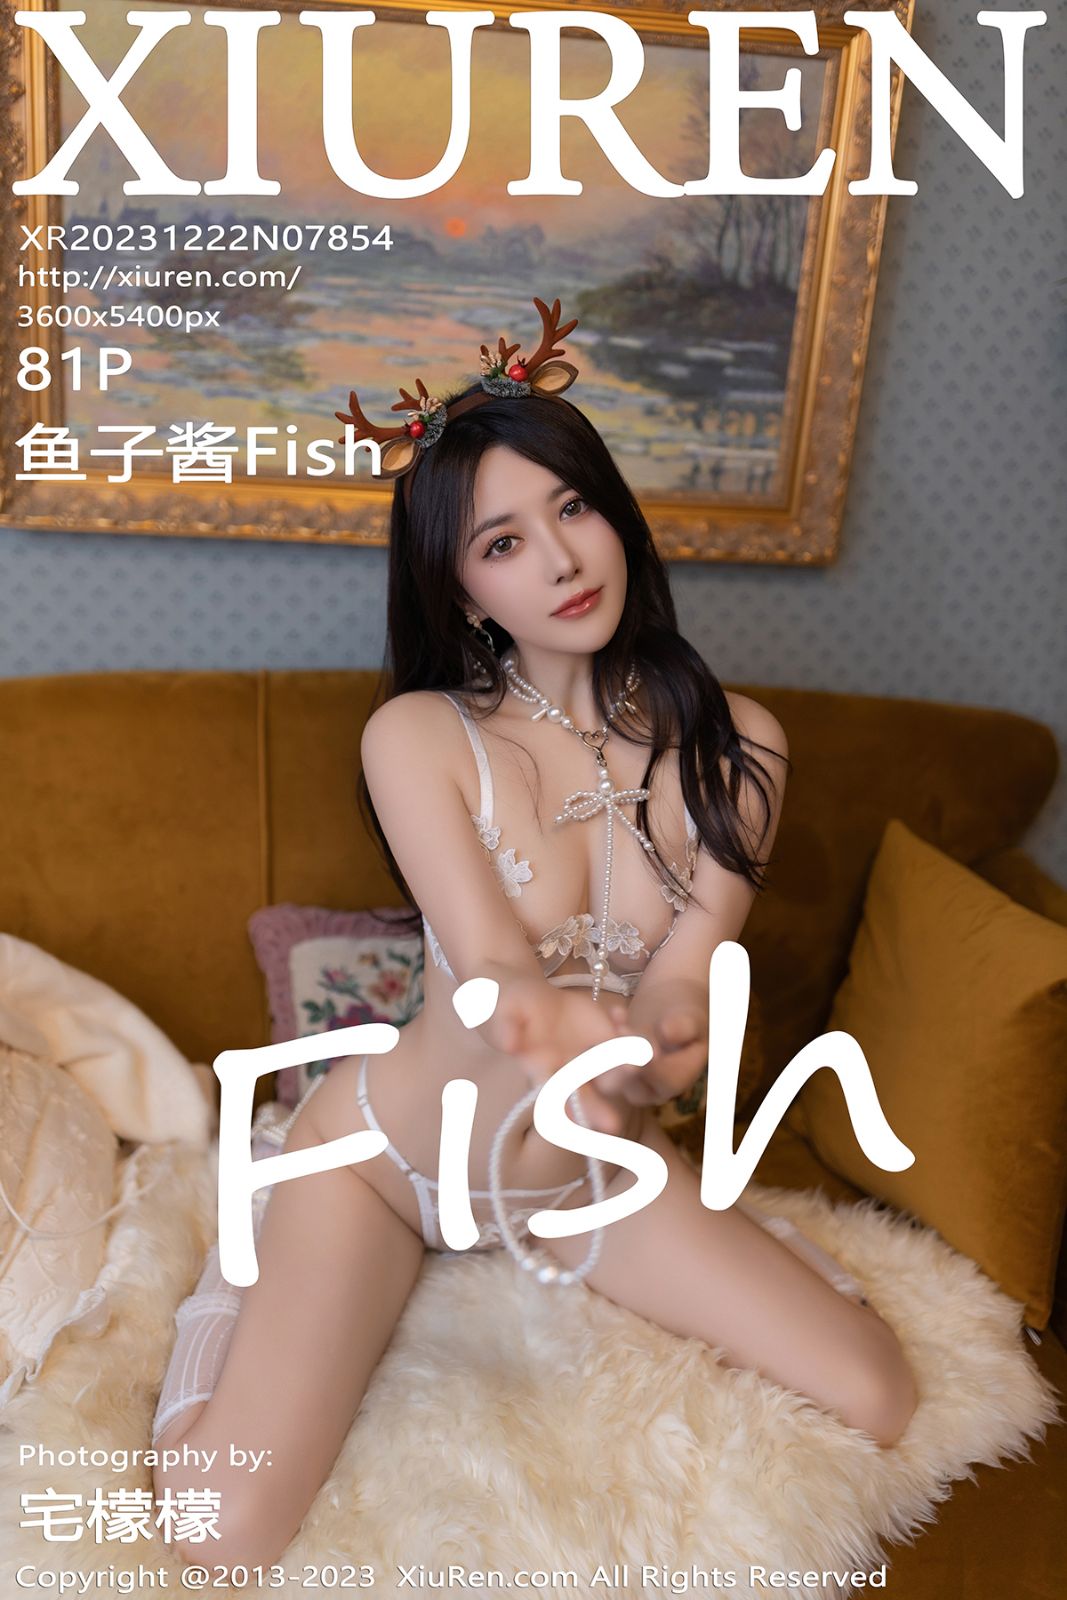 秀人网-第7854期-模特鱼子酱Fish 圣诞性感写真 81张